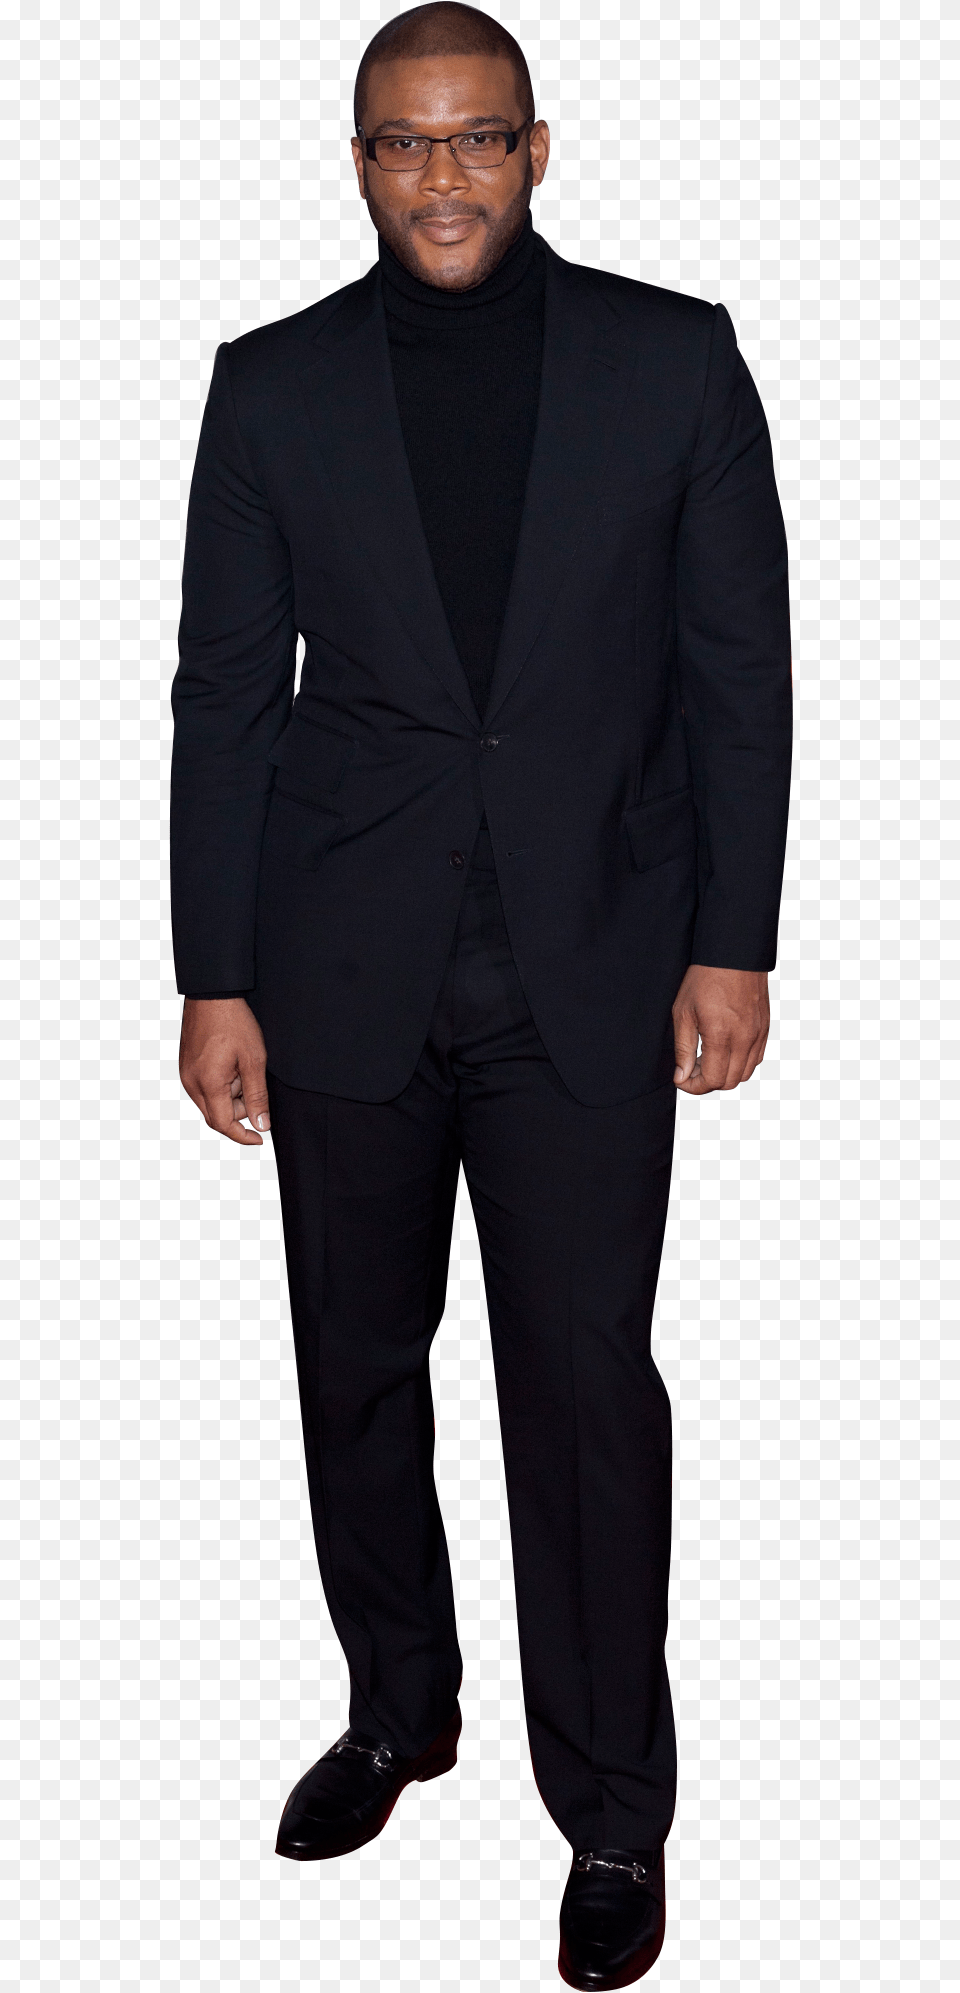 Jon Stewart Taylor Swift Tuxedo, Person, Standing, Formal Wear, Suit Free Png